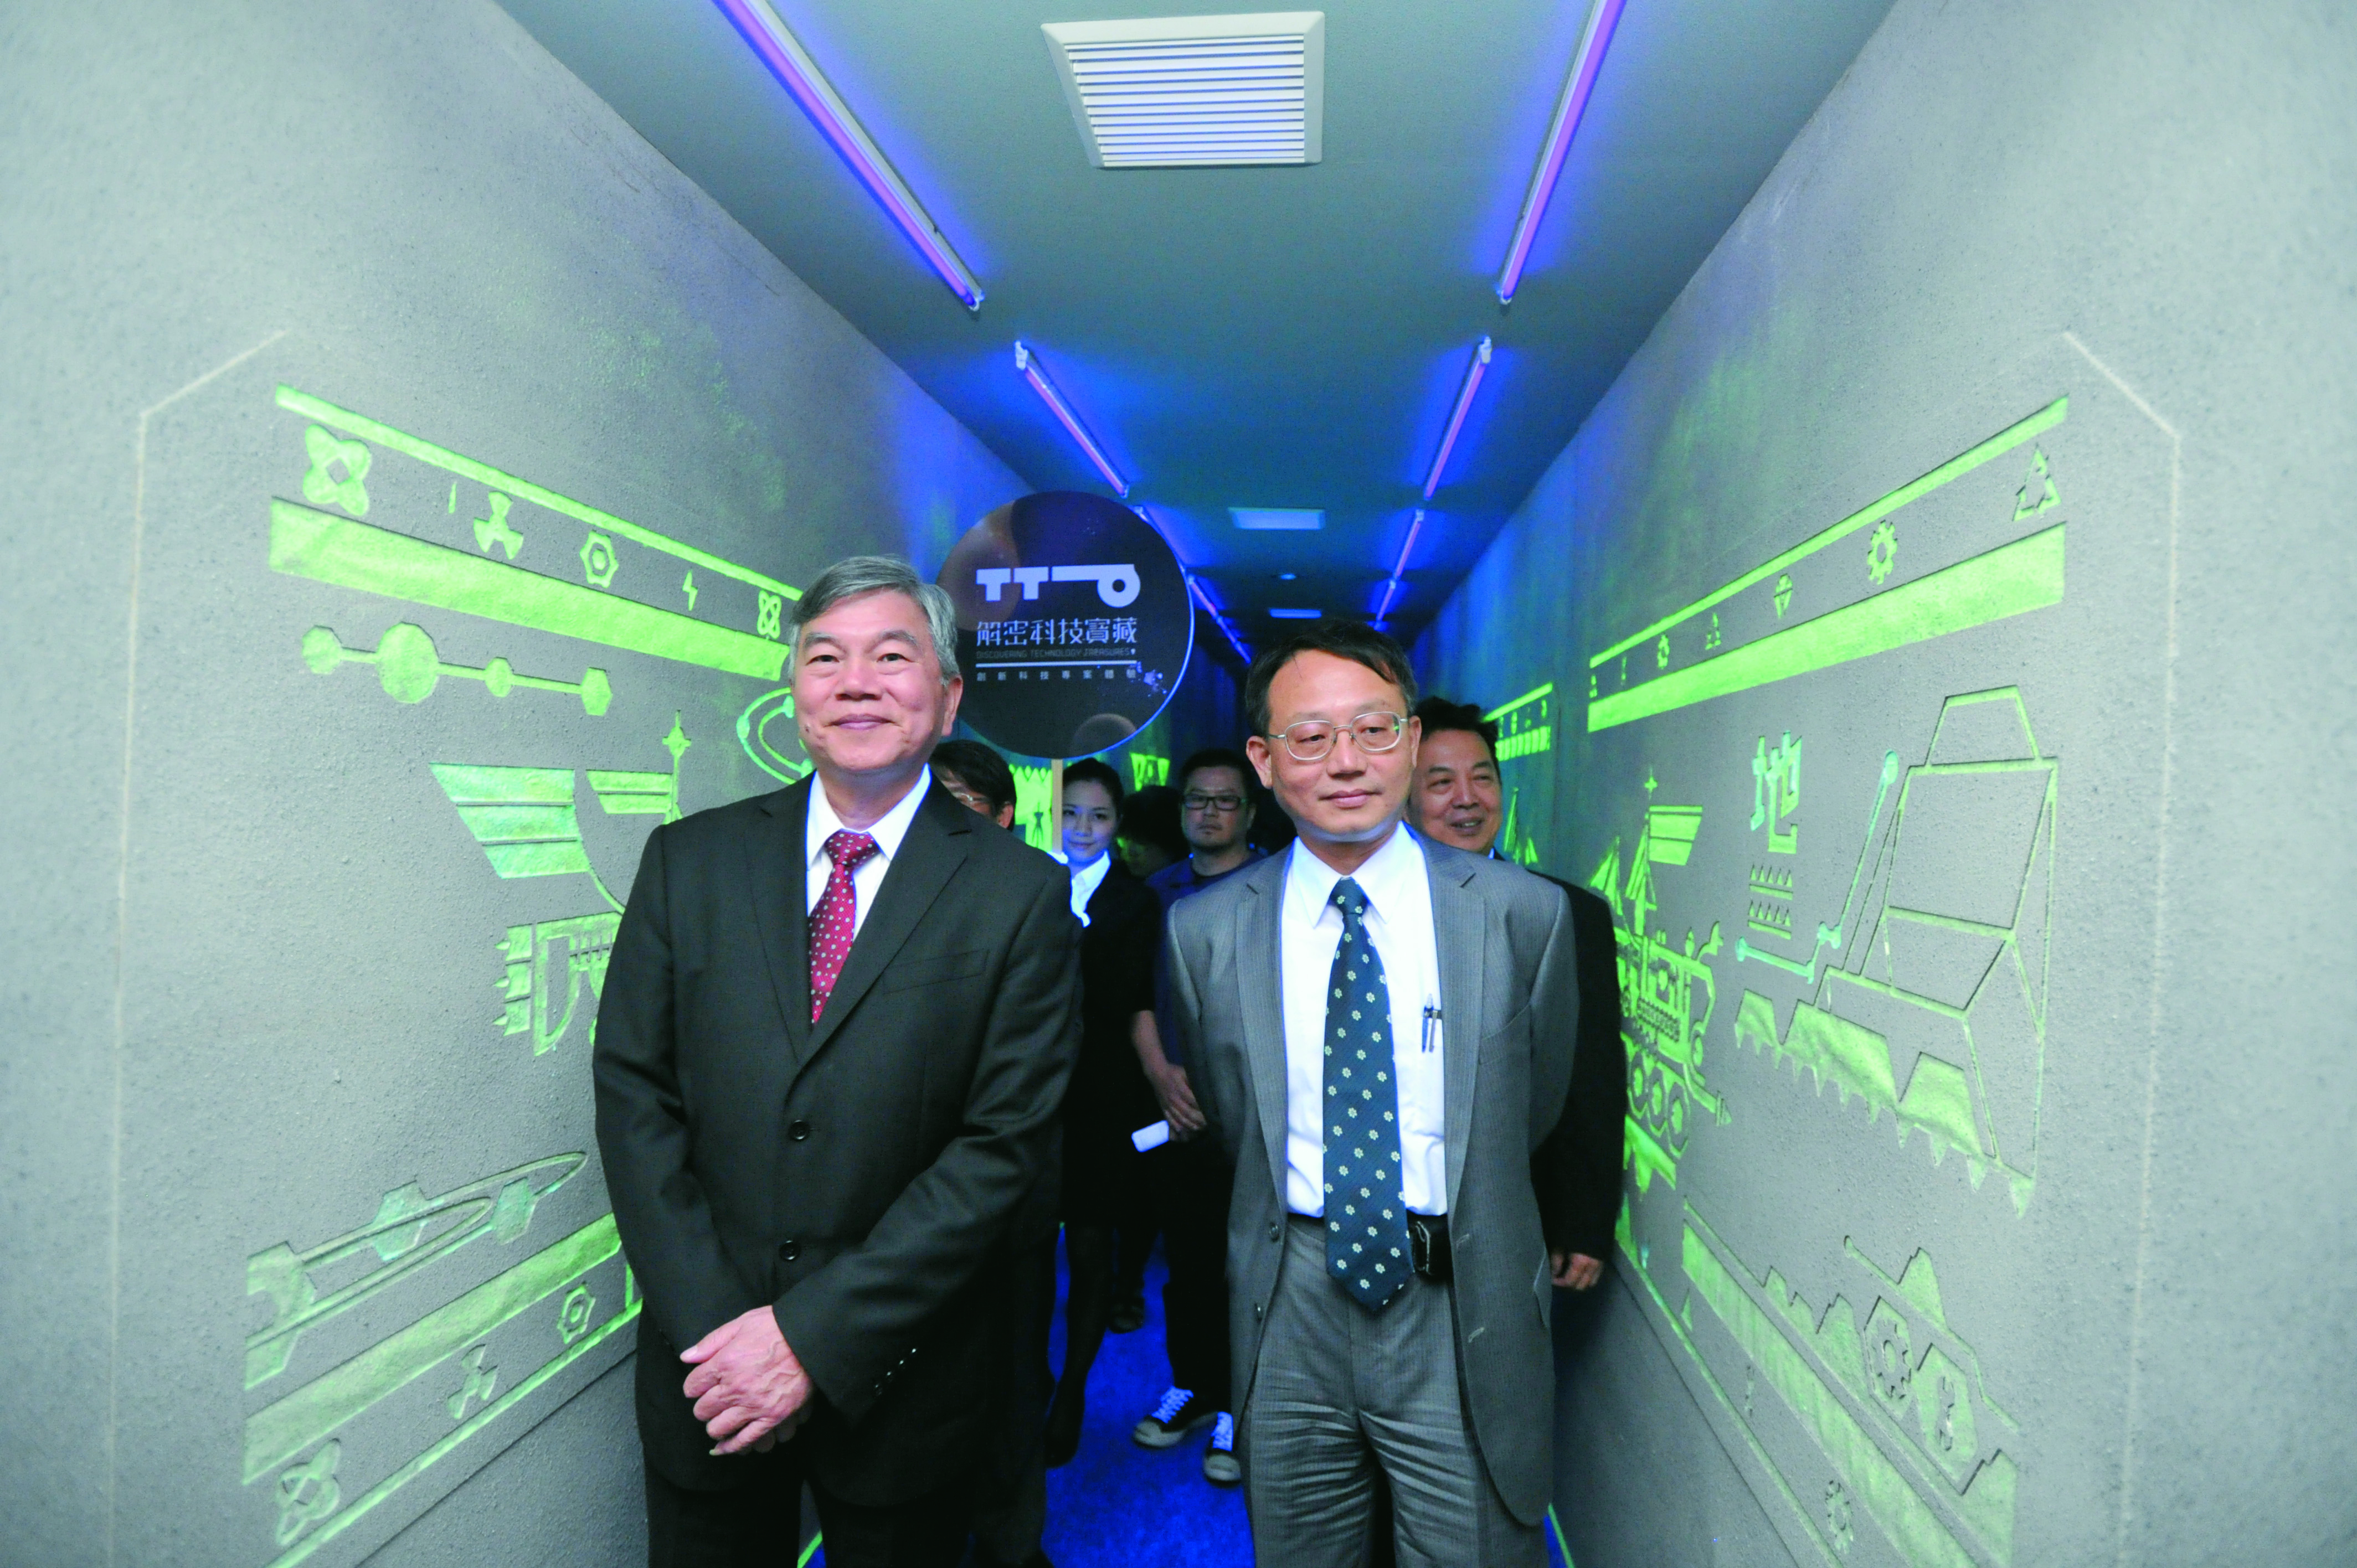 經濟部次長沈榮津（左）與經濟部技術處處長傅偉祥（右），期望透過科技、設計、文創與藝術的跨領域結合，提升臺灣整體創新能量。